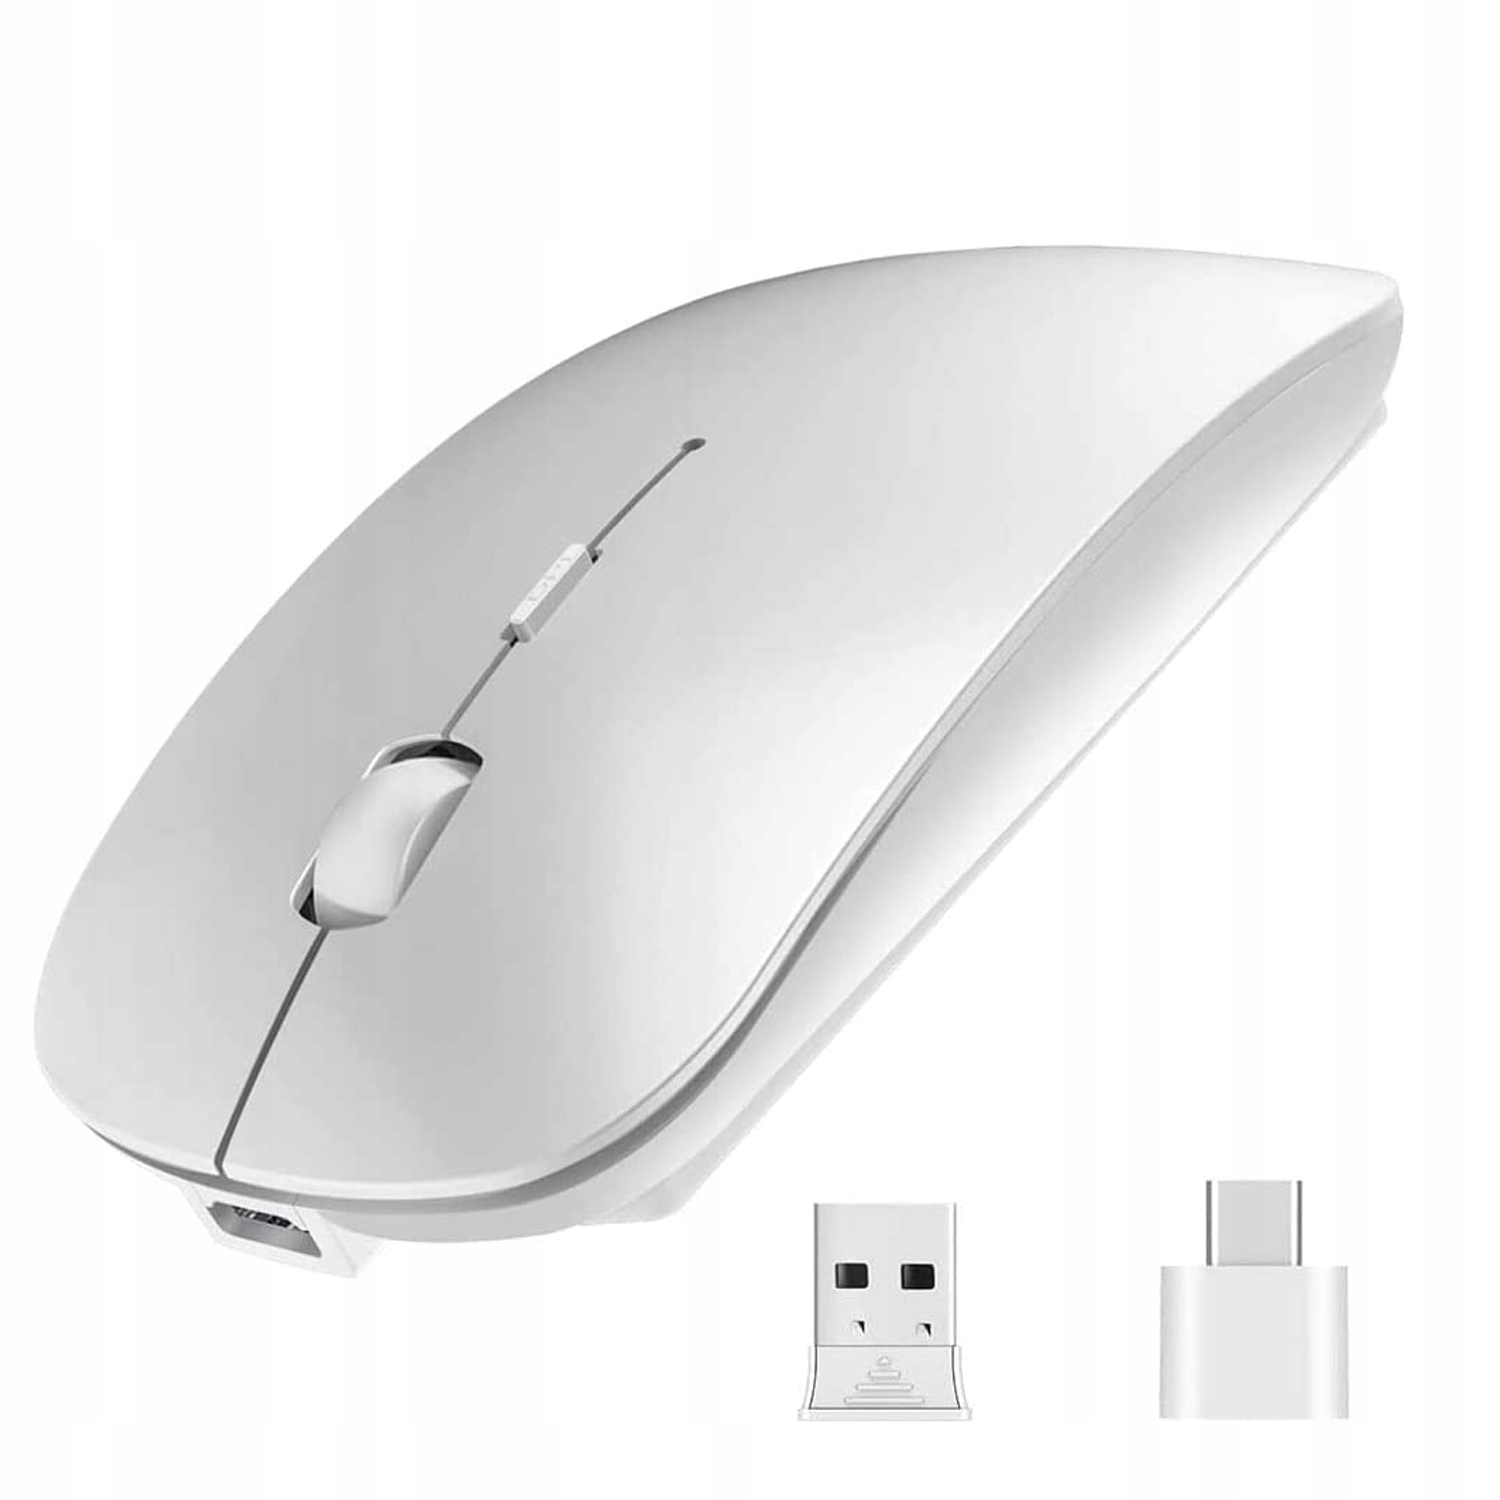 Bluetooth мышь usb. Мышь 2.4GHZ Wireless Mouse. 2.4 GHZ Wireless Mouse. Мышь SMARTBUY беспроводная 2.4GHZ. Мышка Intro 2.4GHZ Wireless.